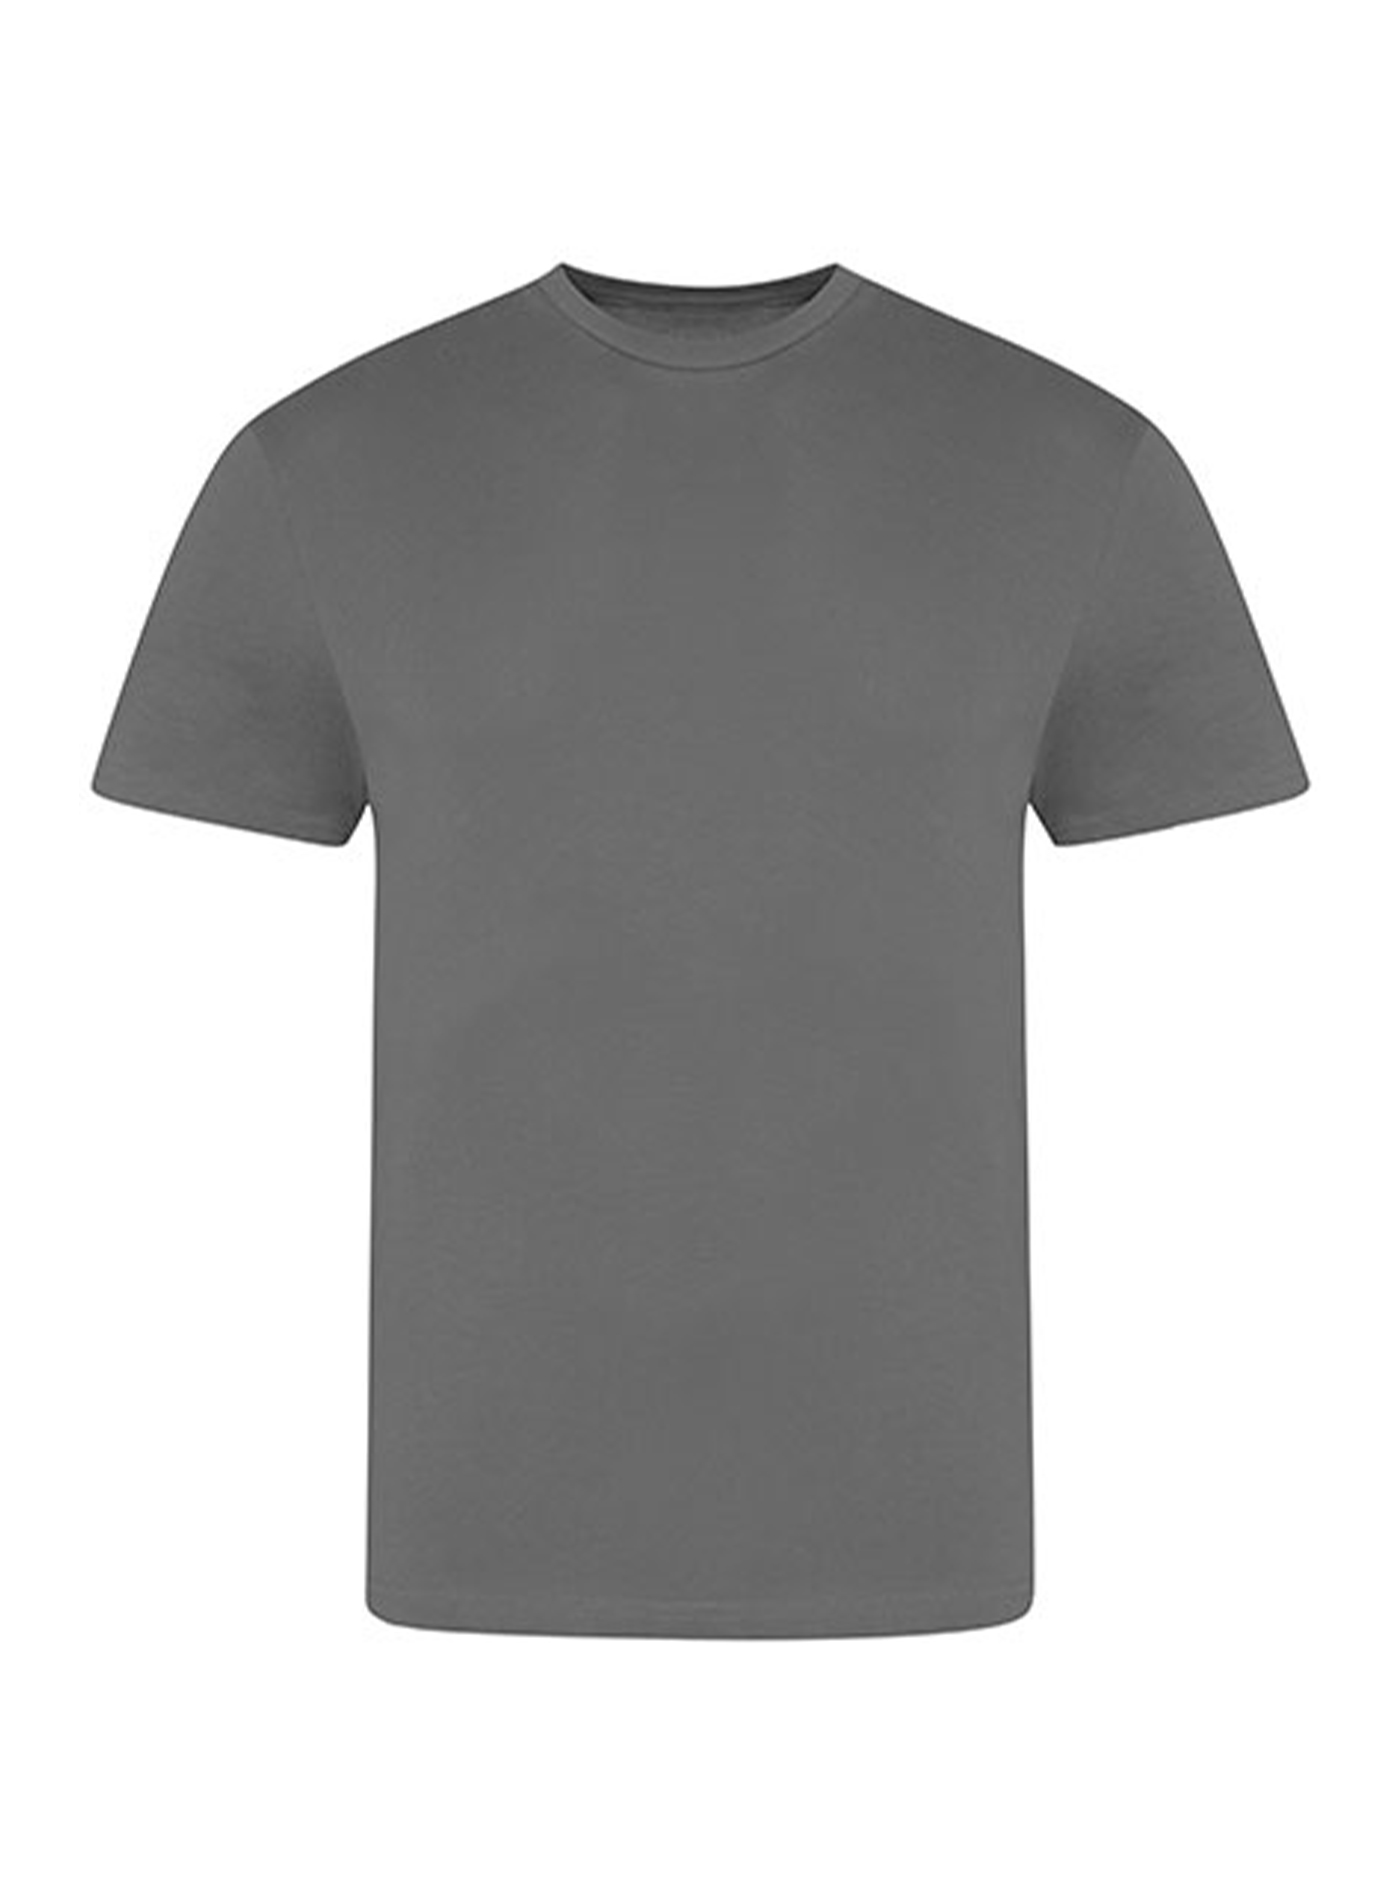 Pánské tričko Just Ts - Charcoal L